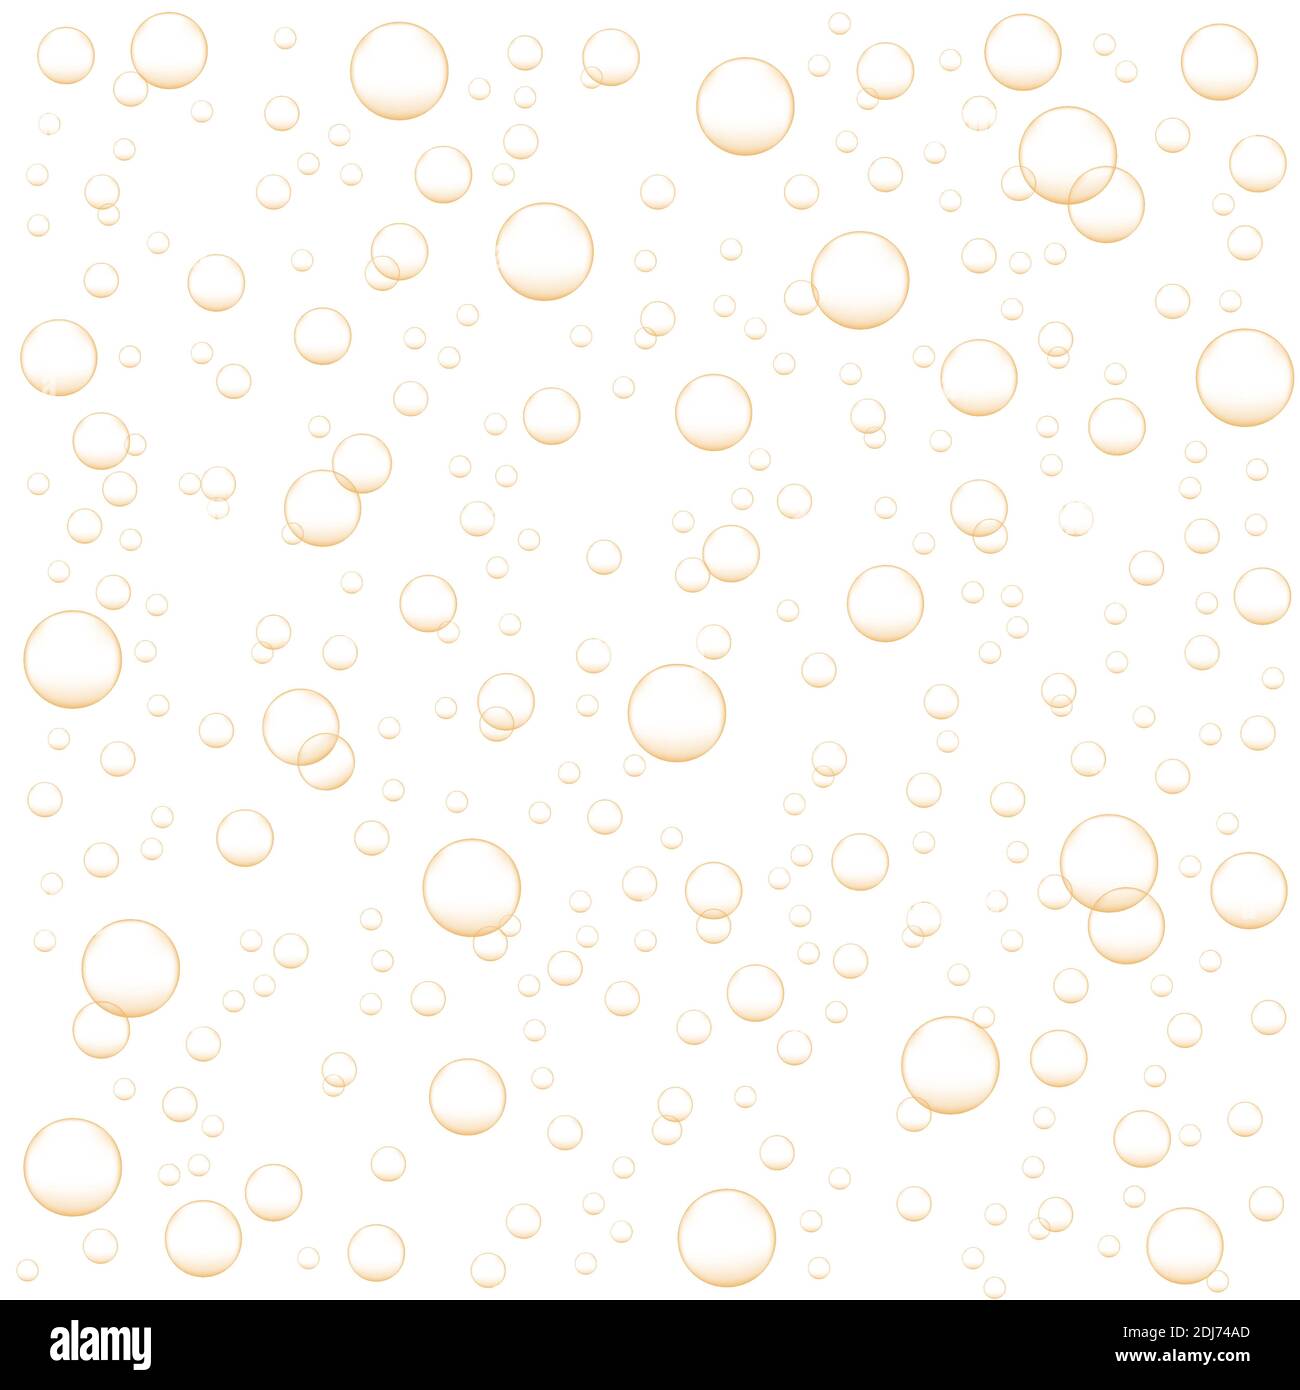 Goldene Luftblasen Champagner, Limonade, Sekt, kohlensäurehaltiges Getränk. Abstrakter Hintergrund mit Sauerstoff-Fizz. Vektor realistische Illustration. Stock Vektor